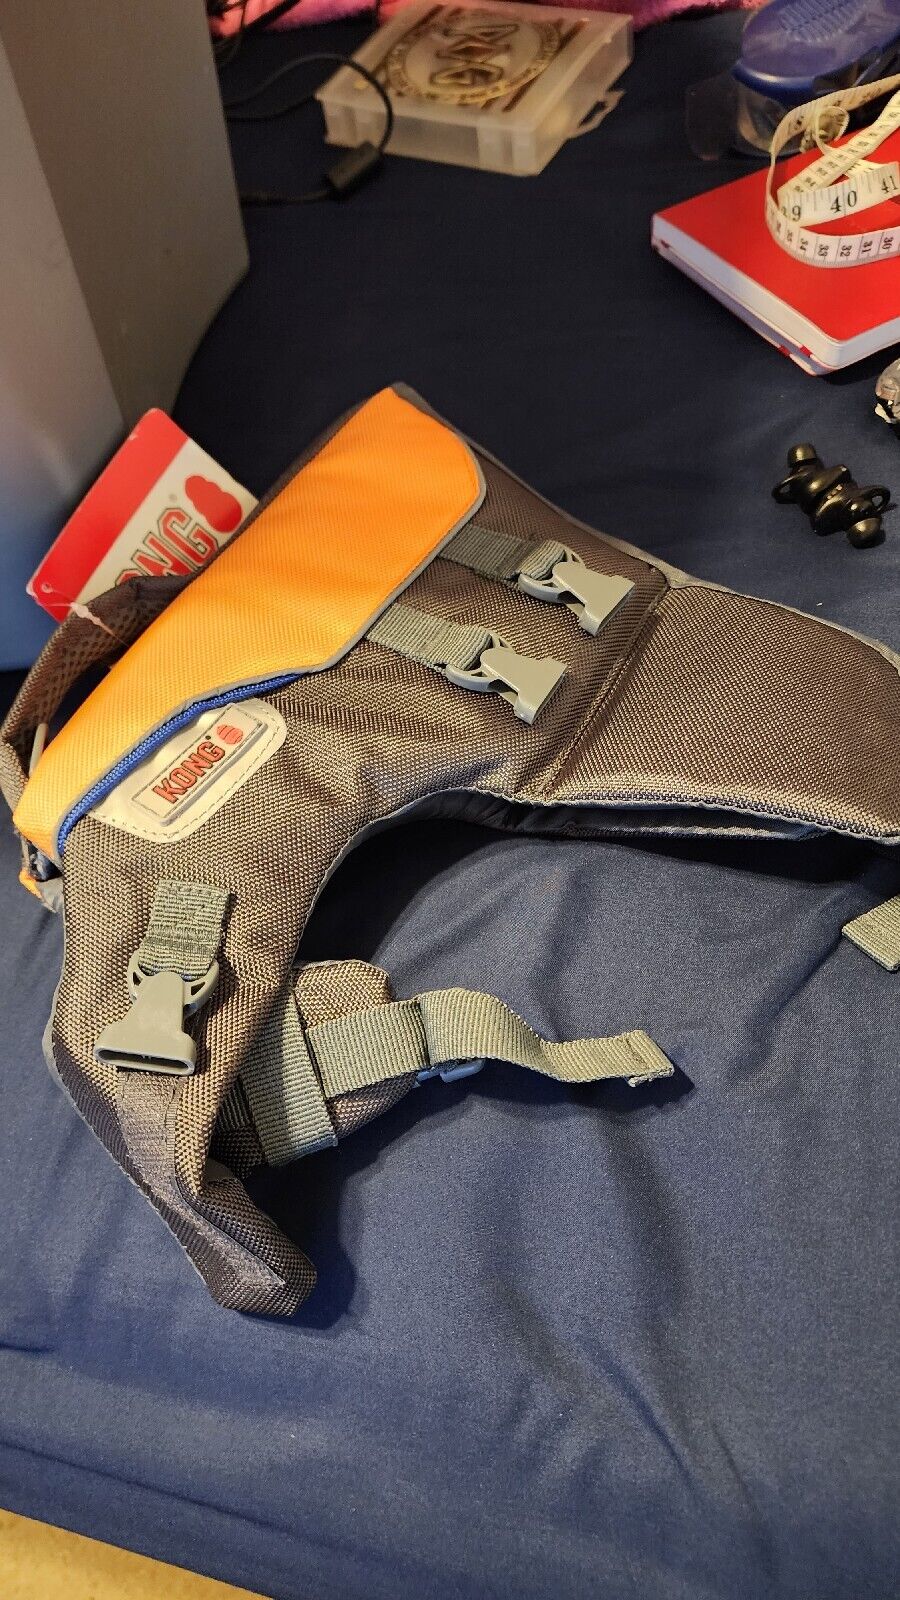 Kong Dog Float Ripstop Flotation Preserver Safety Vest Adjustable Life Jacket